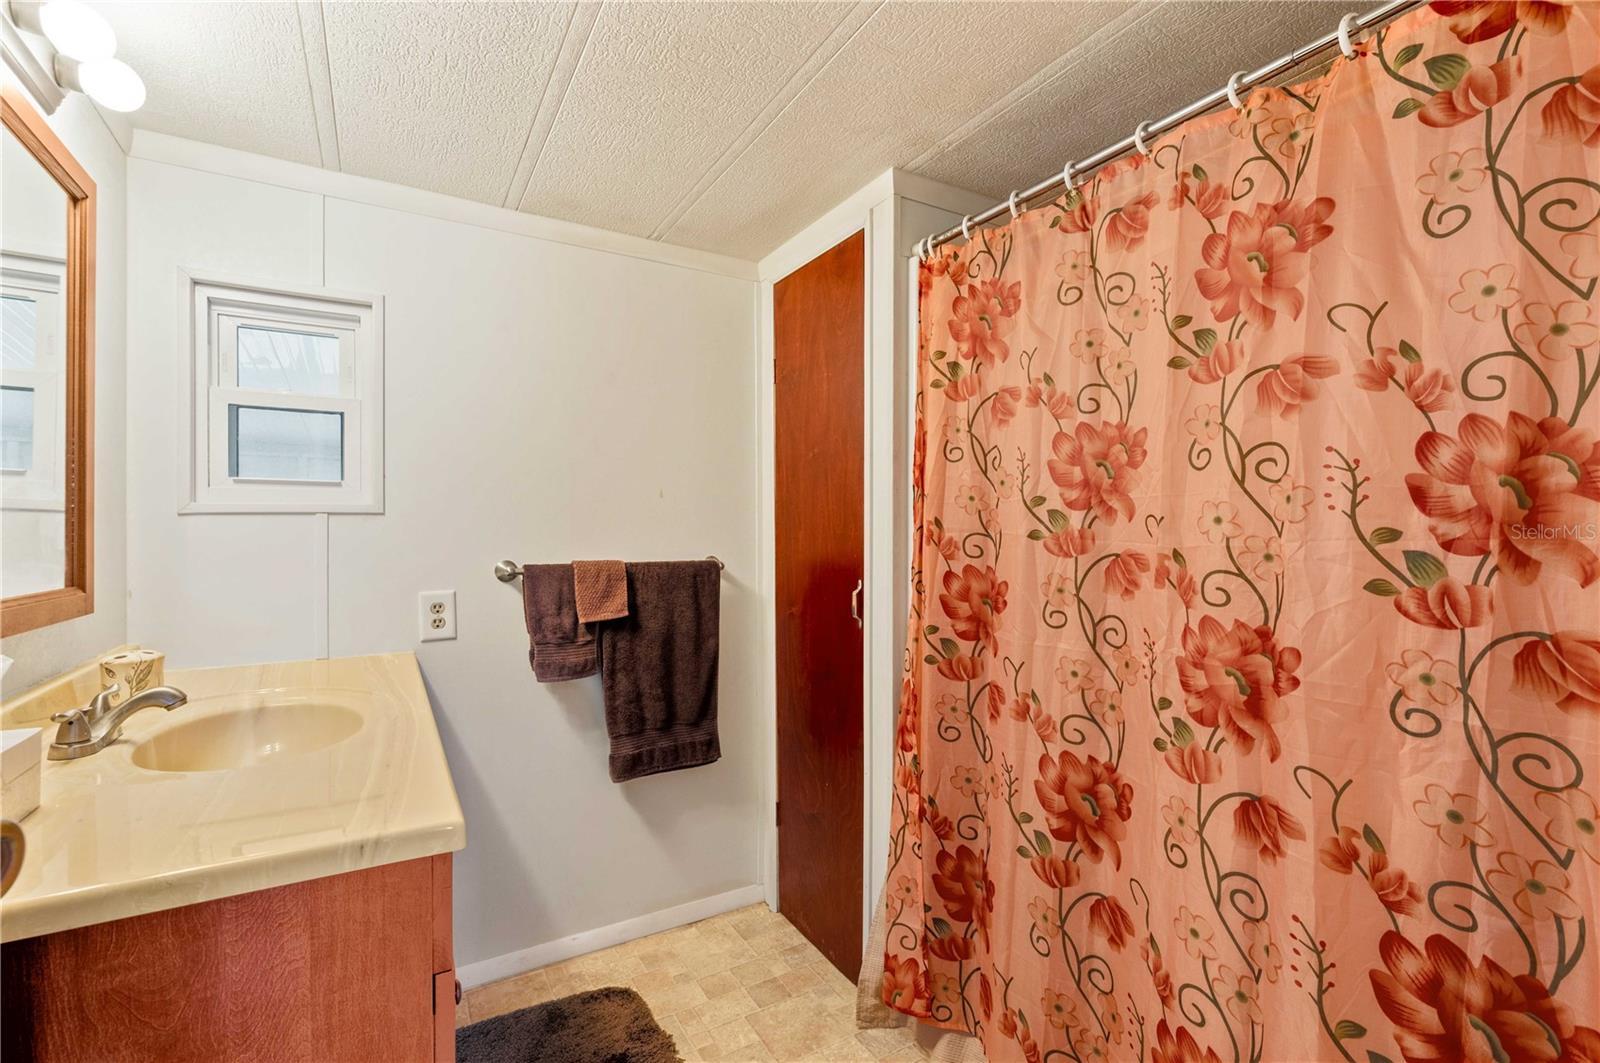 Main bathroom has step-in shower, updated vanity, and flooring.